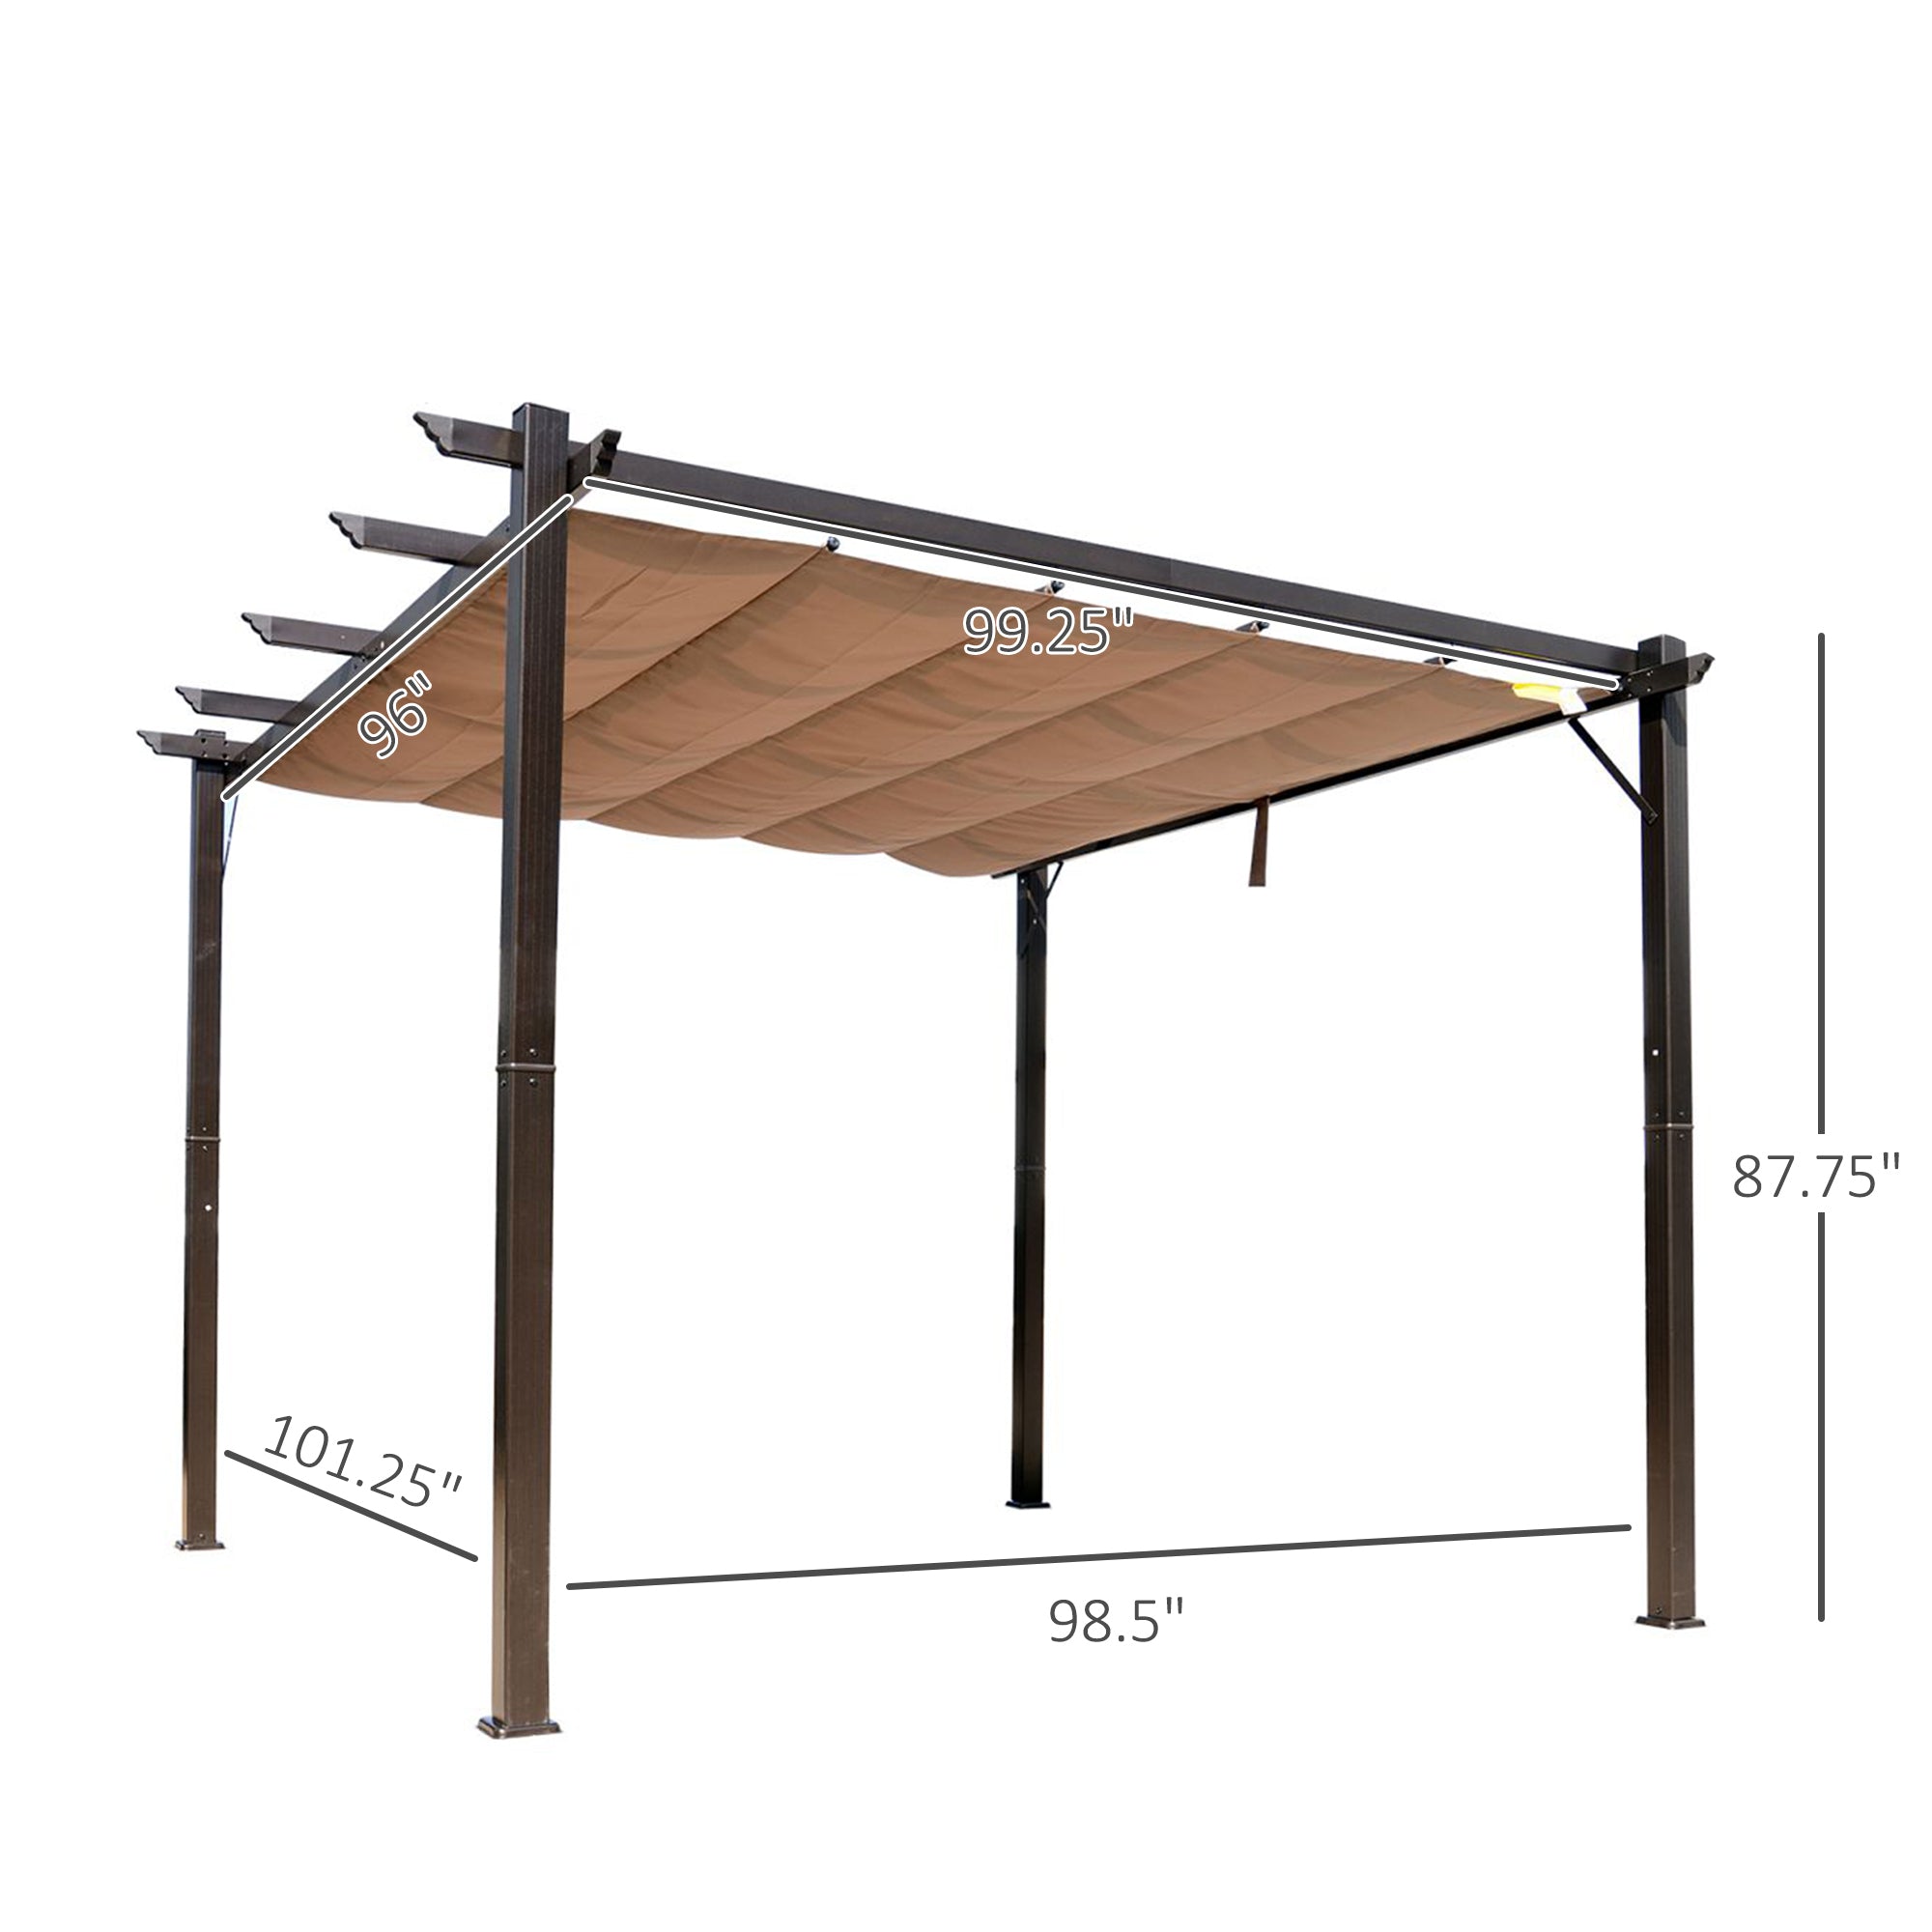 10' x 10' Outdoor Retractable Pergola Canopy, Aluminum brown-aluminium